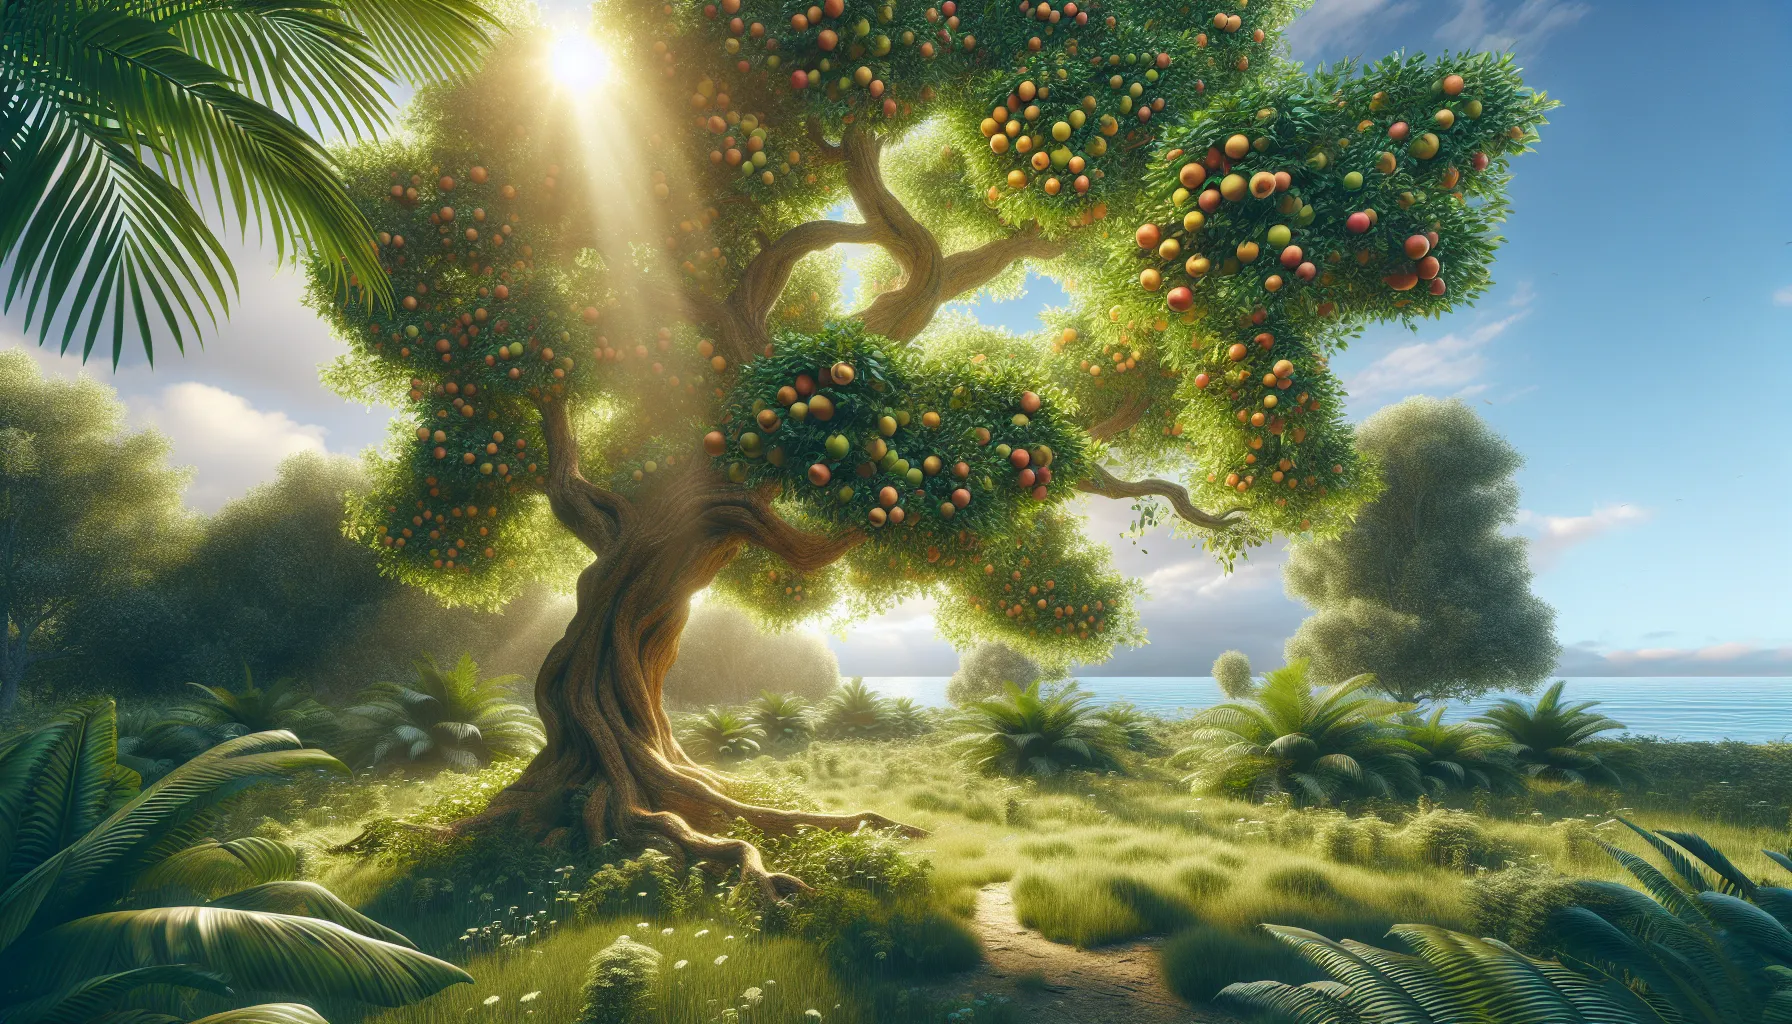 Imagen ilustrativa de un árbol frondoso cargado de frutos